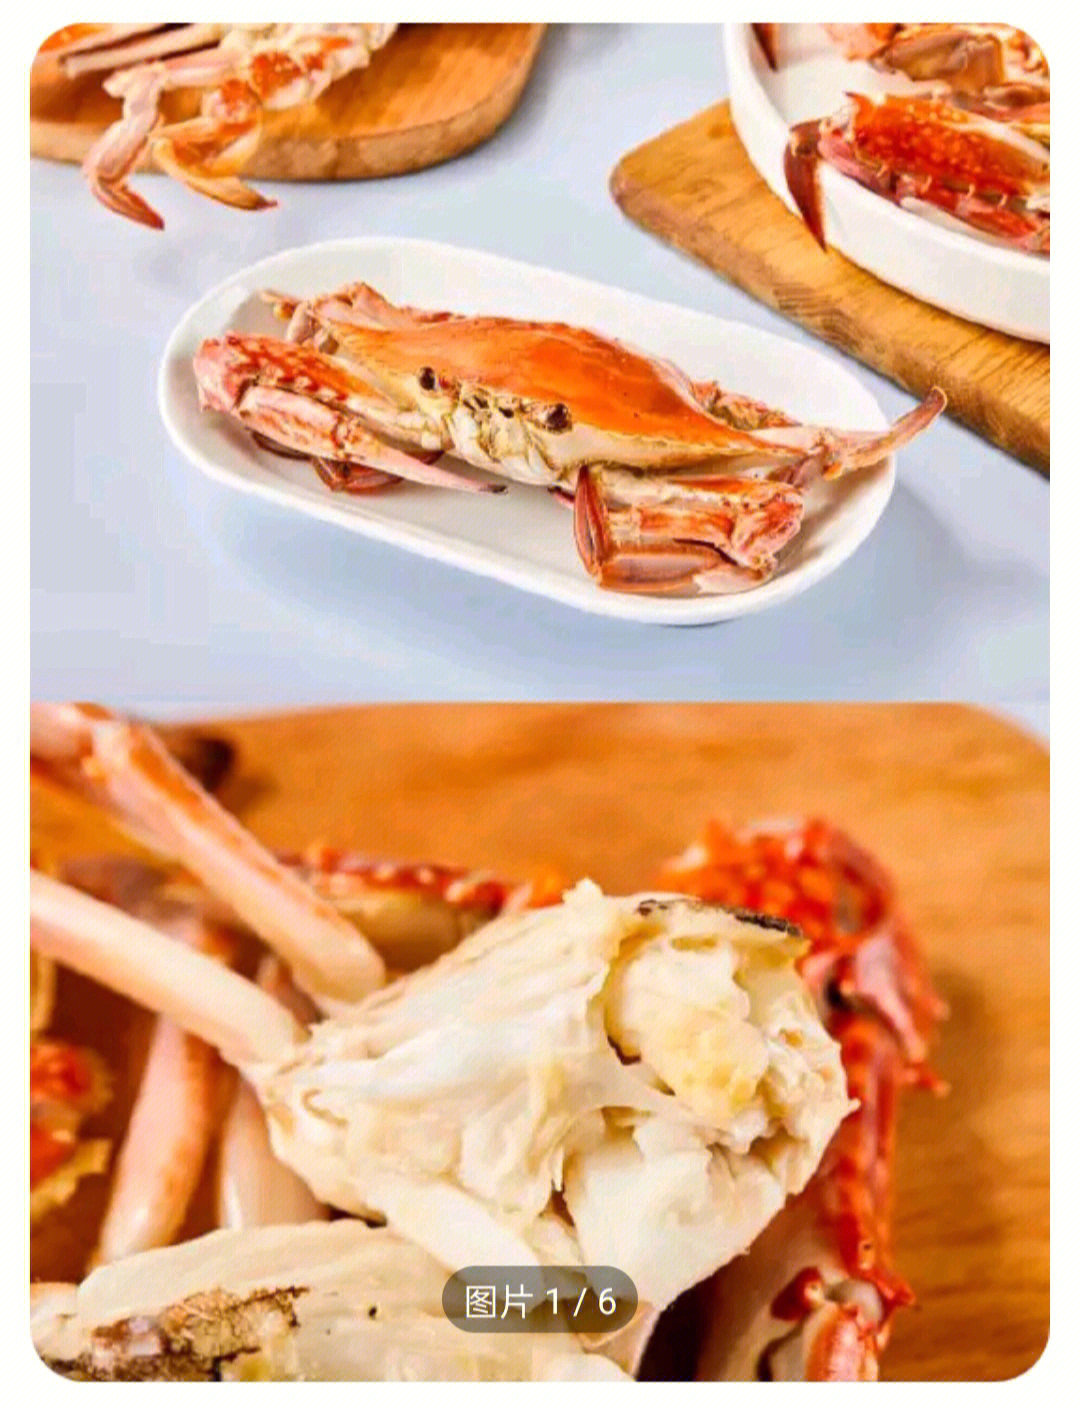 我们常吃的梭子蟹是三疣梭子蟹,这种螃蟹的壳上有三个小突起,因此得名